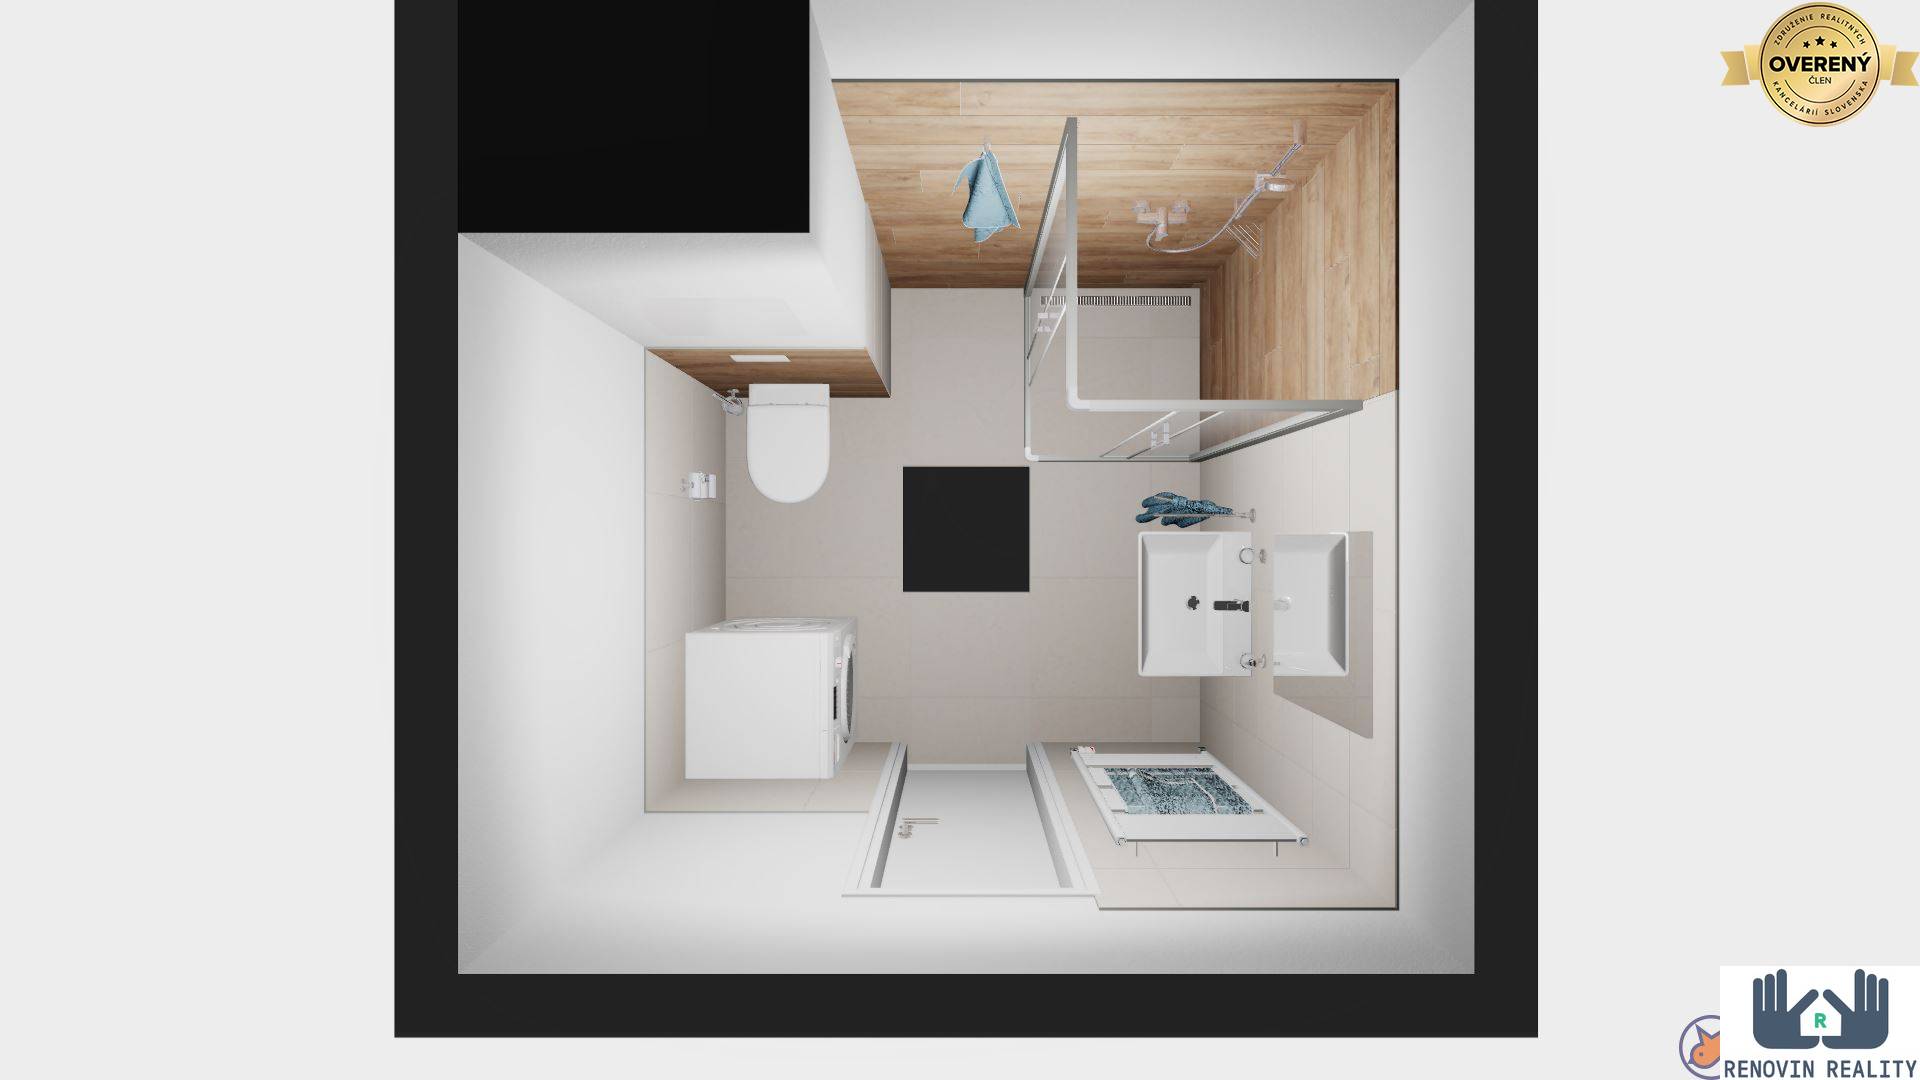  2-izbový byt v novostavbe Hájik vo Zvolene na predaj H5 - kúpelňa 